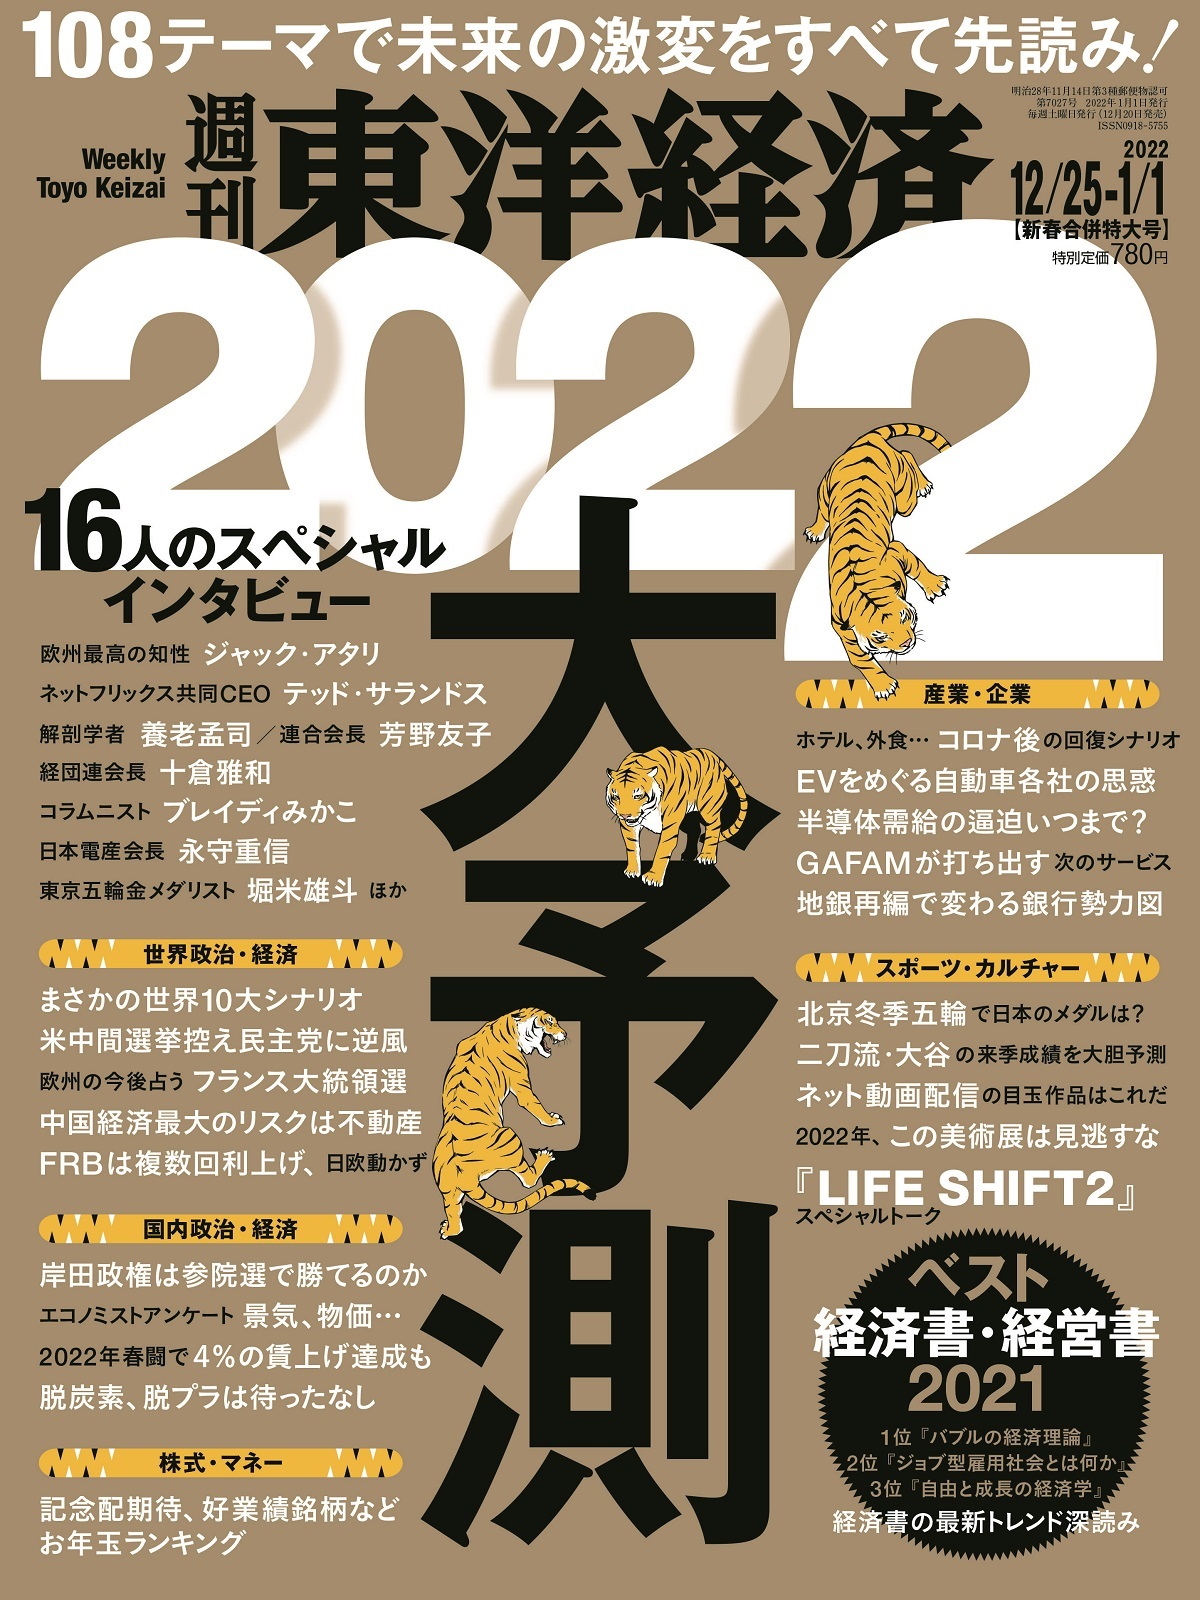 週刊東洋経済2021年12/25-2022年1/1日新春合併特大号